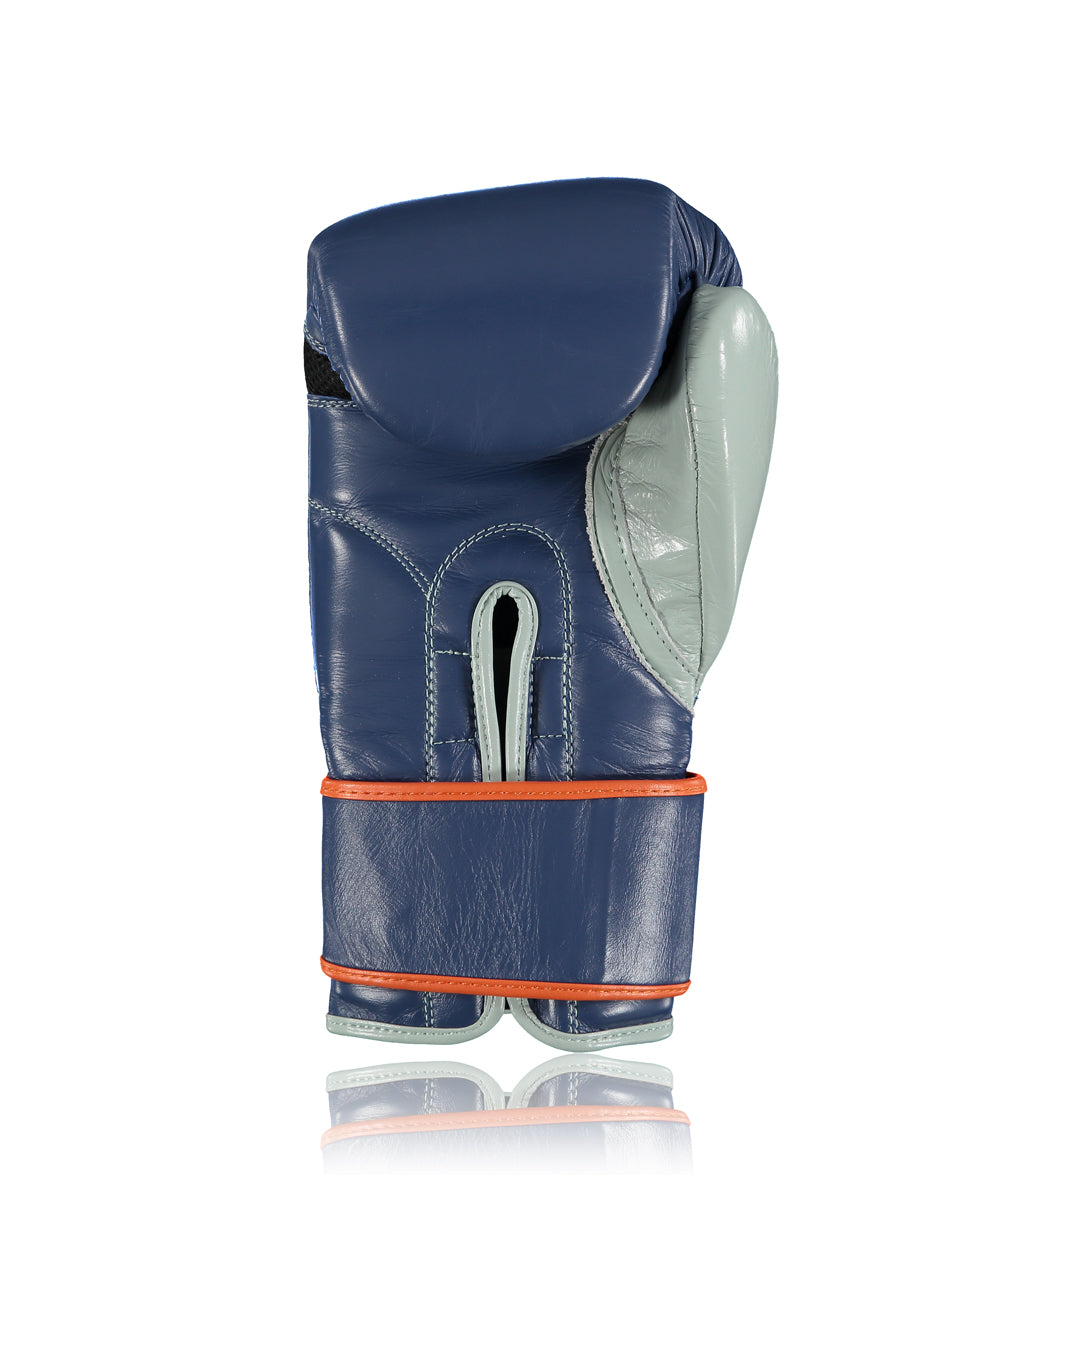 AJBXNG Elite EBG200 Bag Glove 12oz